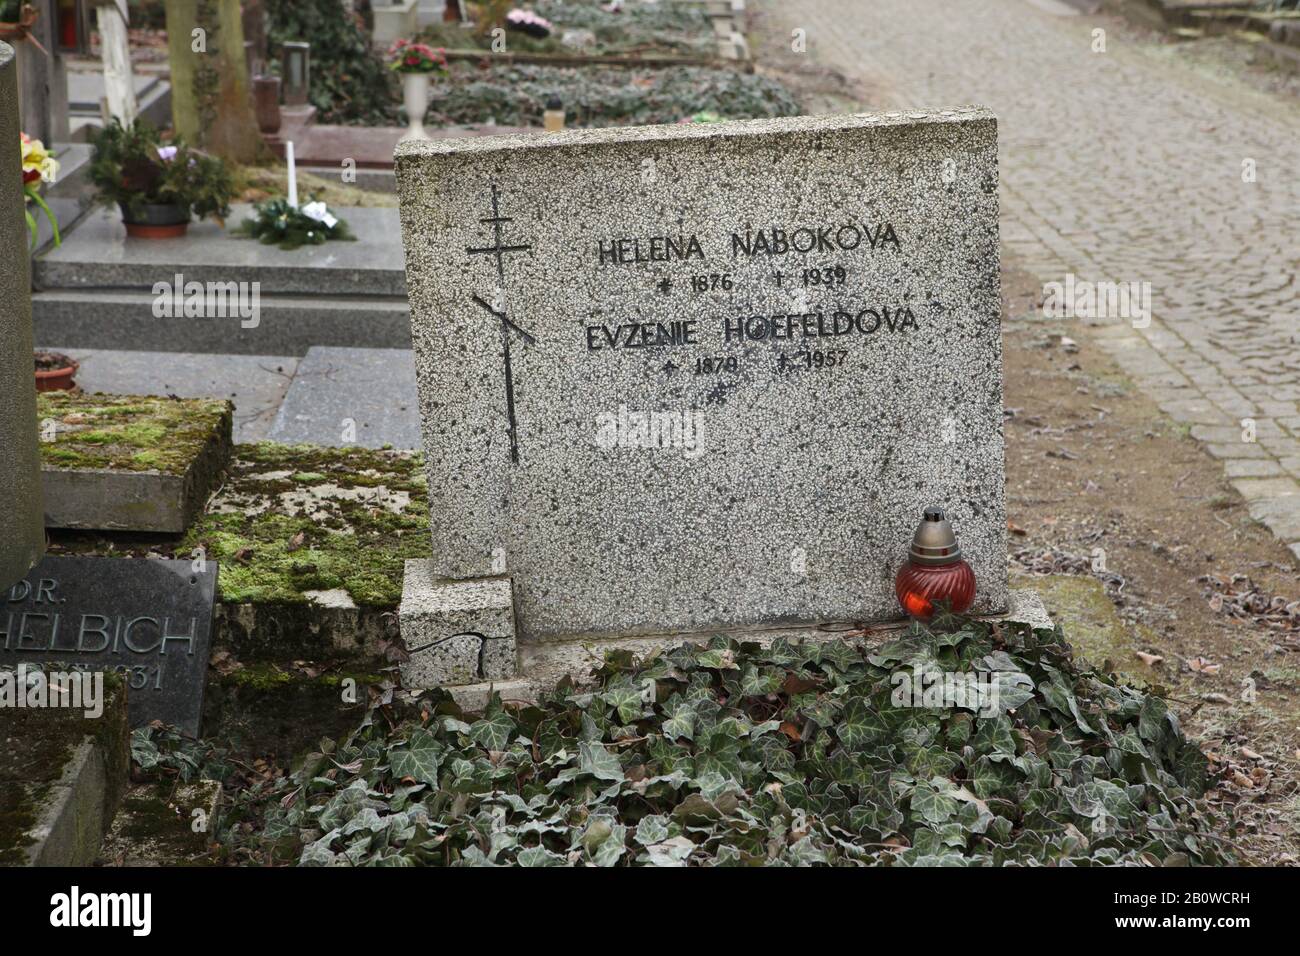 Tomba di Yelena Nabokova, née. Rukavishnikova (1878-1939), madre del famoso romanziere russo Vladimir Nabokov, nel cimitero di Olšany a Praga, Repubblica Ceca. La sua governante Evgenia Hofeld è anche scritto come Evženie Hoefeldová (1879-1957) è sepolto nella stessa tomba. Foto Stock